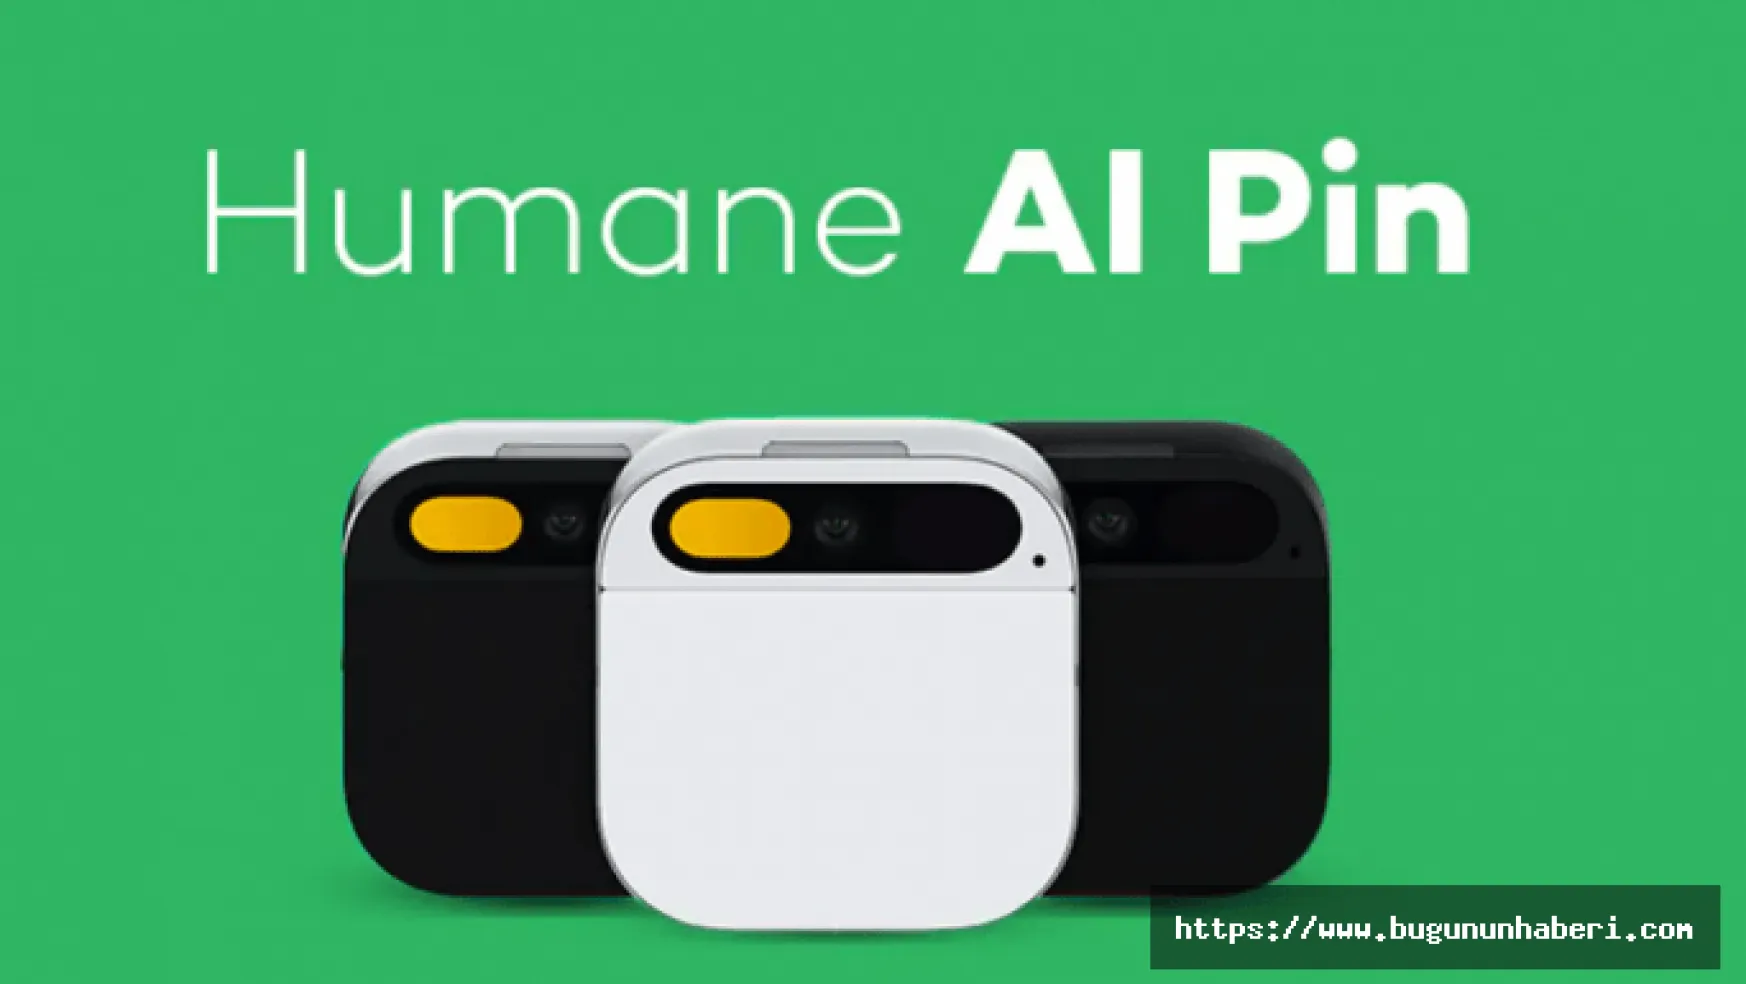 Humane Al Pin nedir, ne işe yarıyor? Humane Al Pin Türkiye fiyatı, nerede satılıyor?